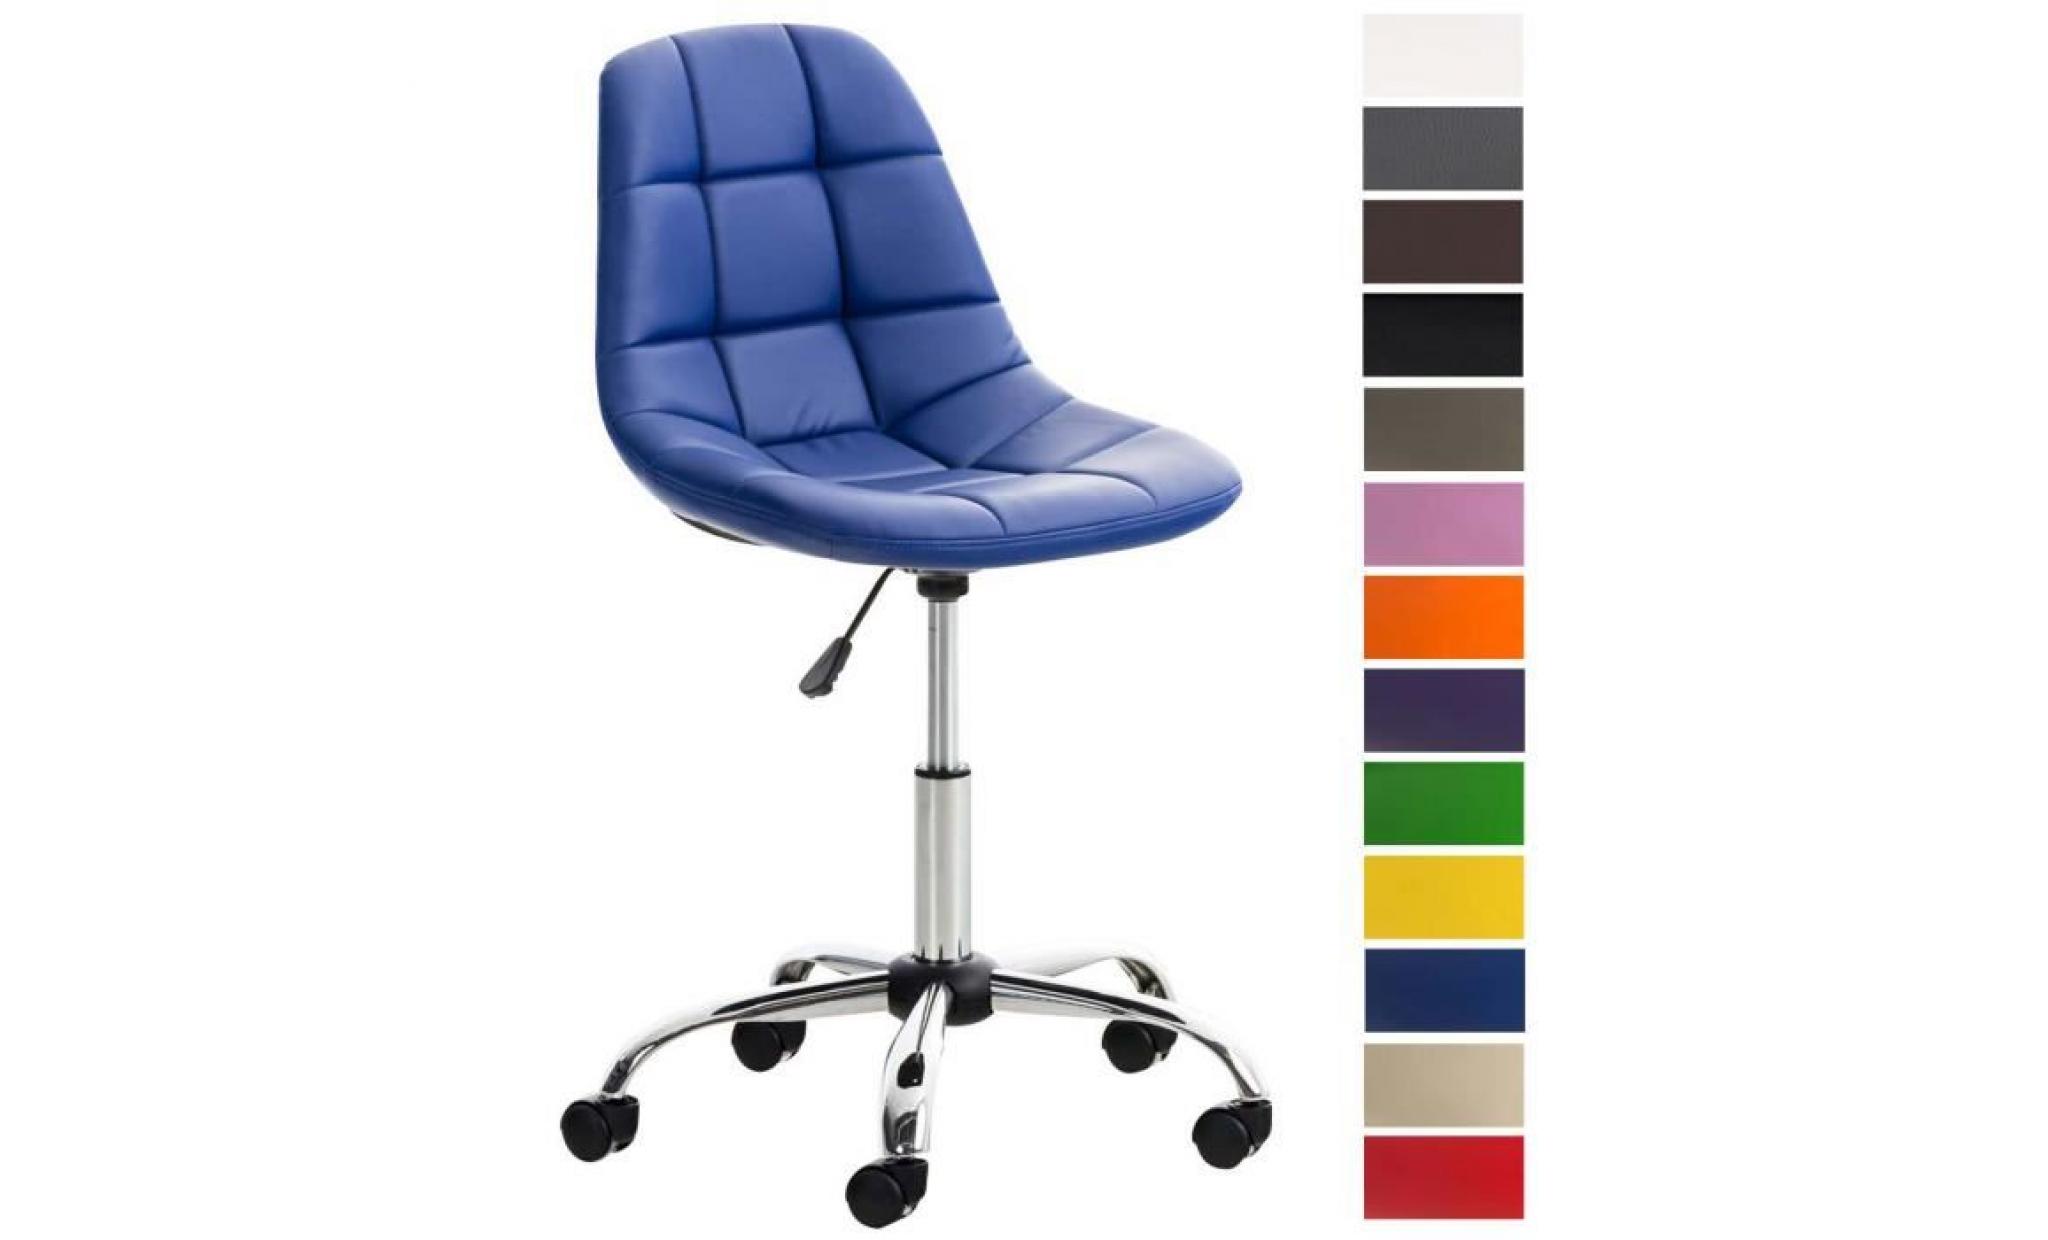 clp chaise de bureau emil  en simili cuir, siège matelassé, chaise pivotante avec support en métal chromé, hauteur réglable